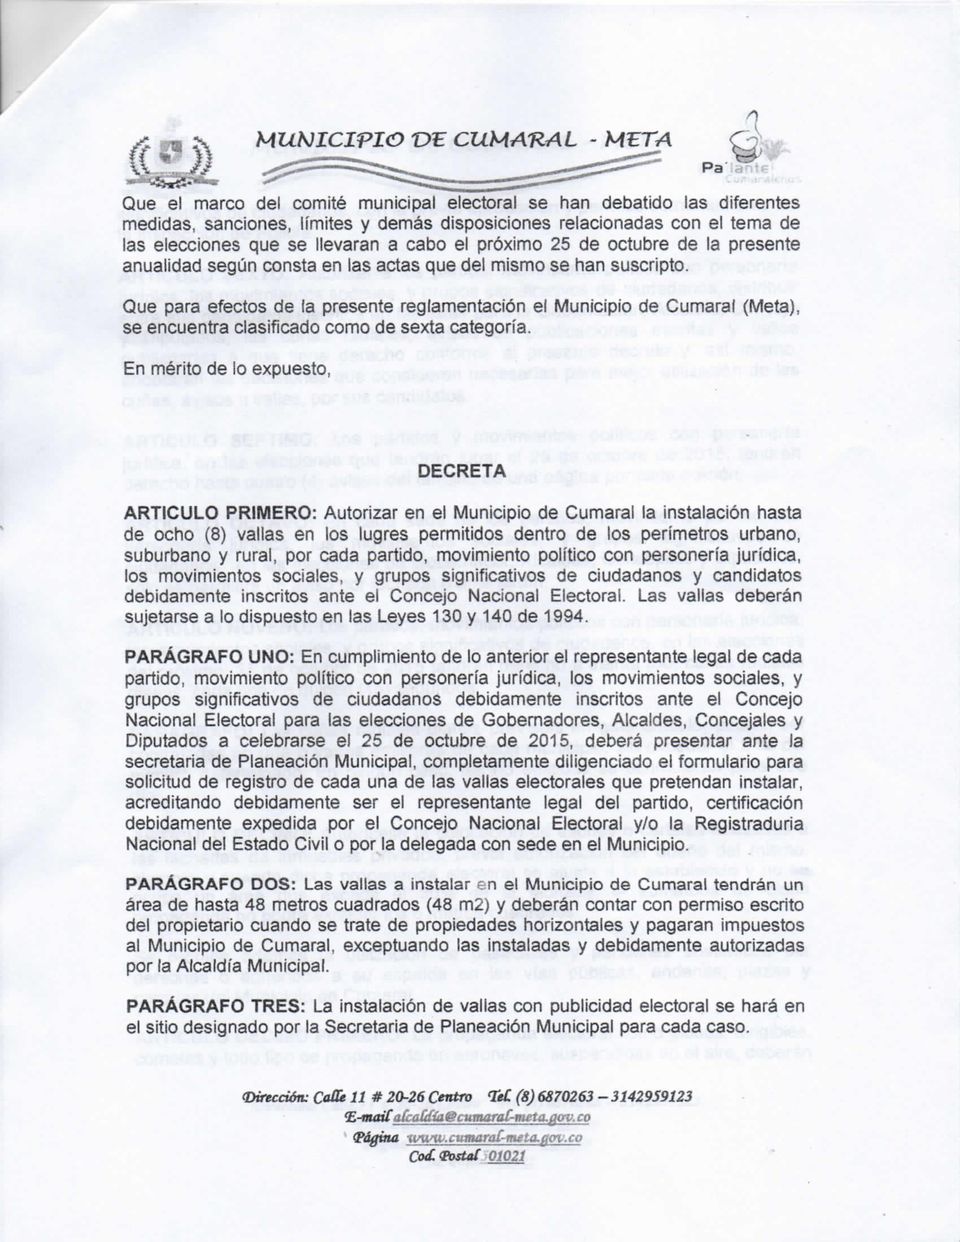 Que para efectos de la presente reglamentación el Municipio de Cumaral (Meta), se encuentra clasificado como de sexta categoría.